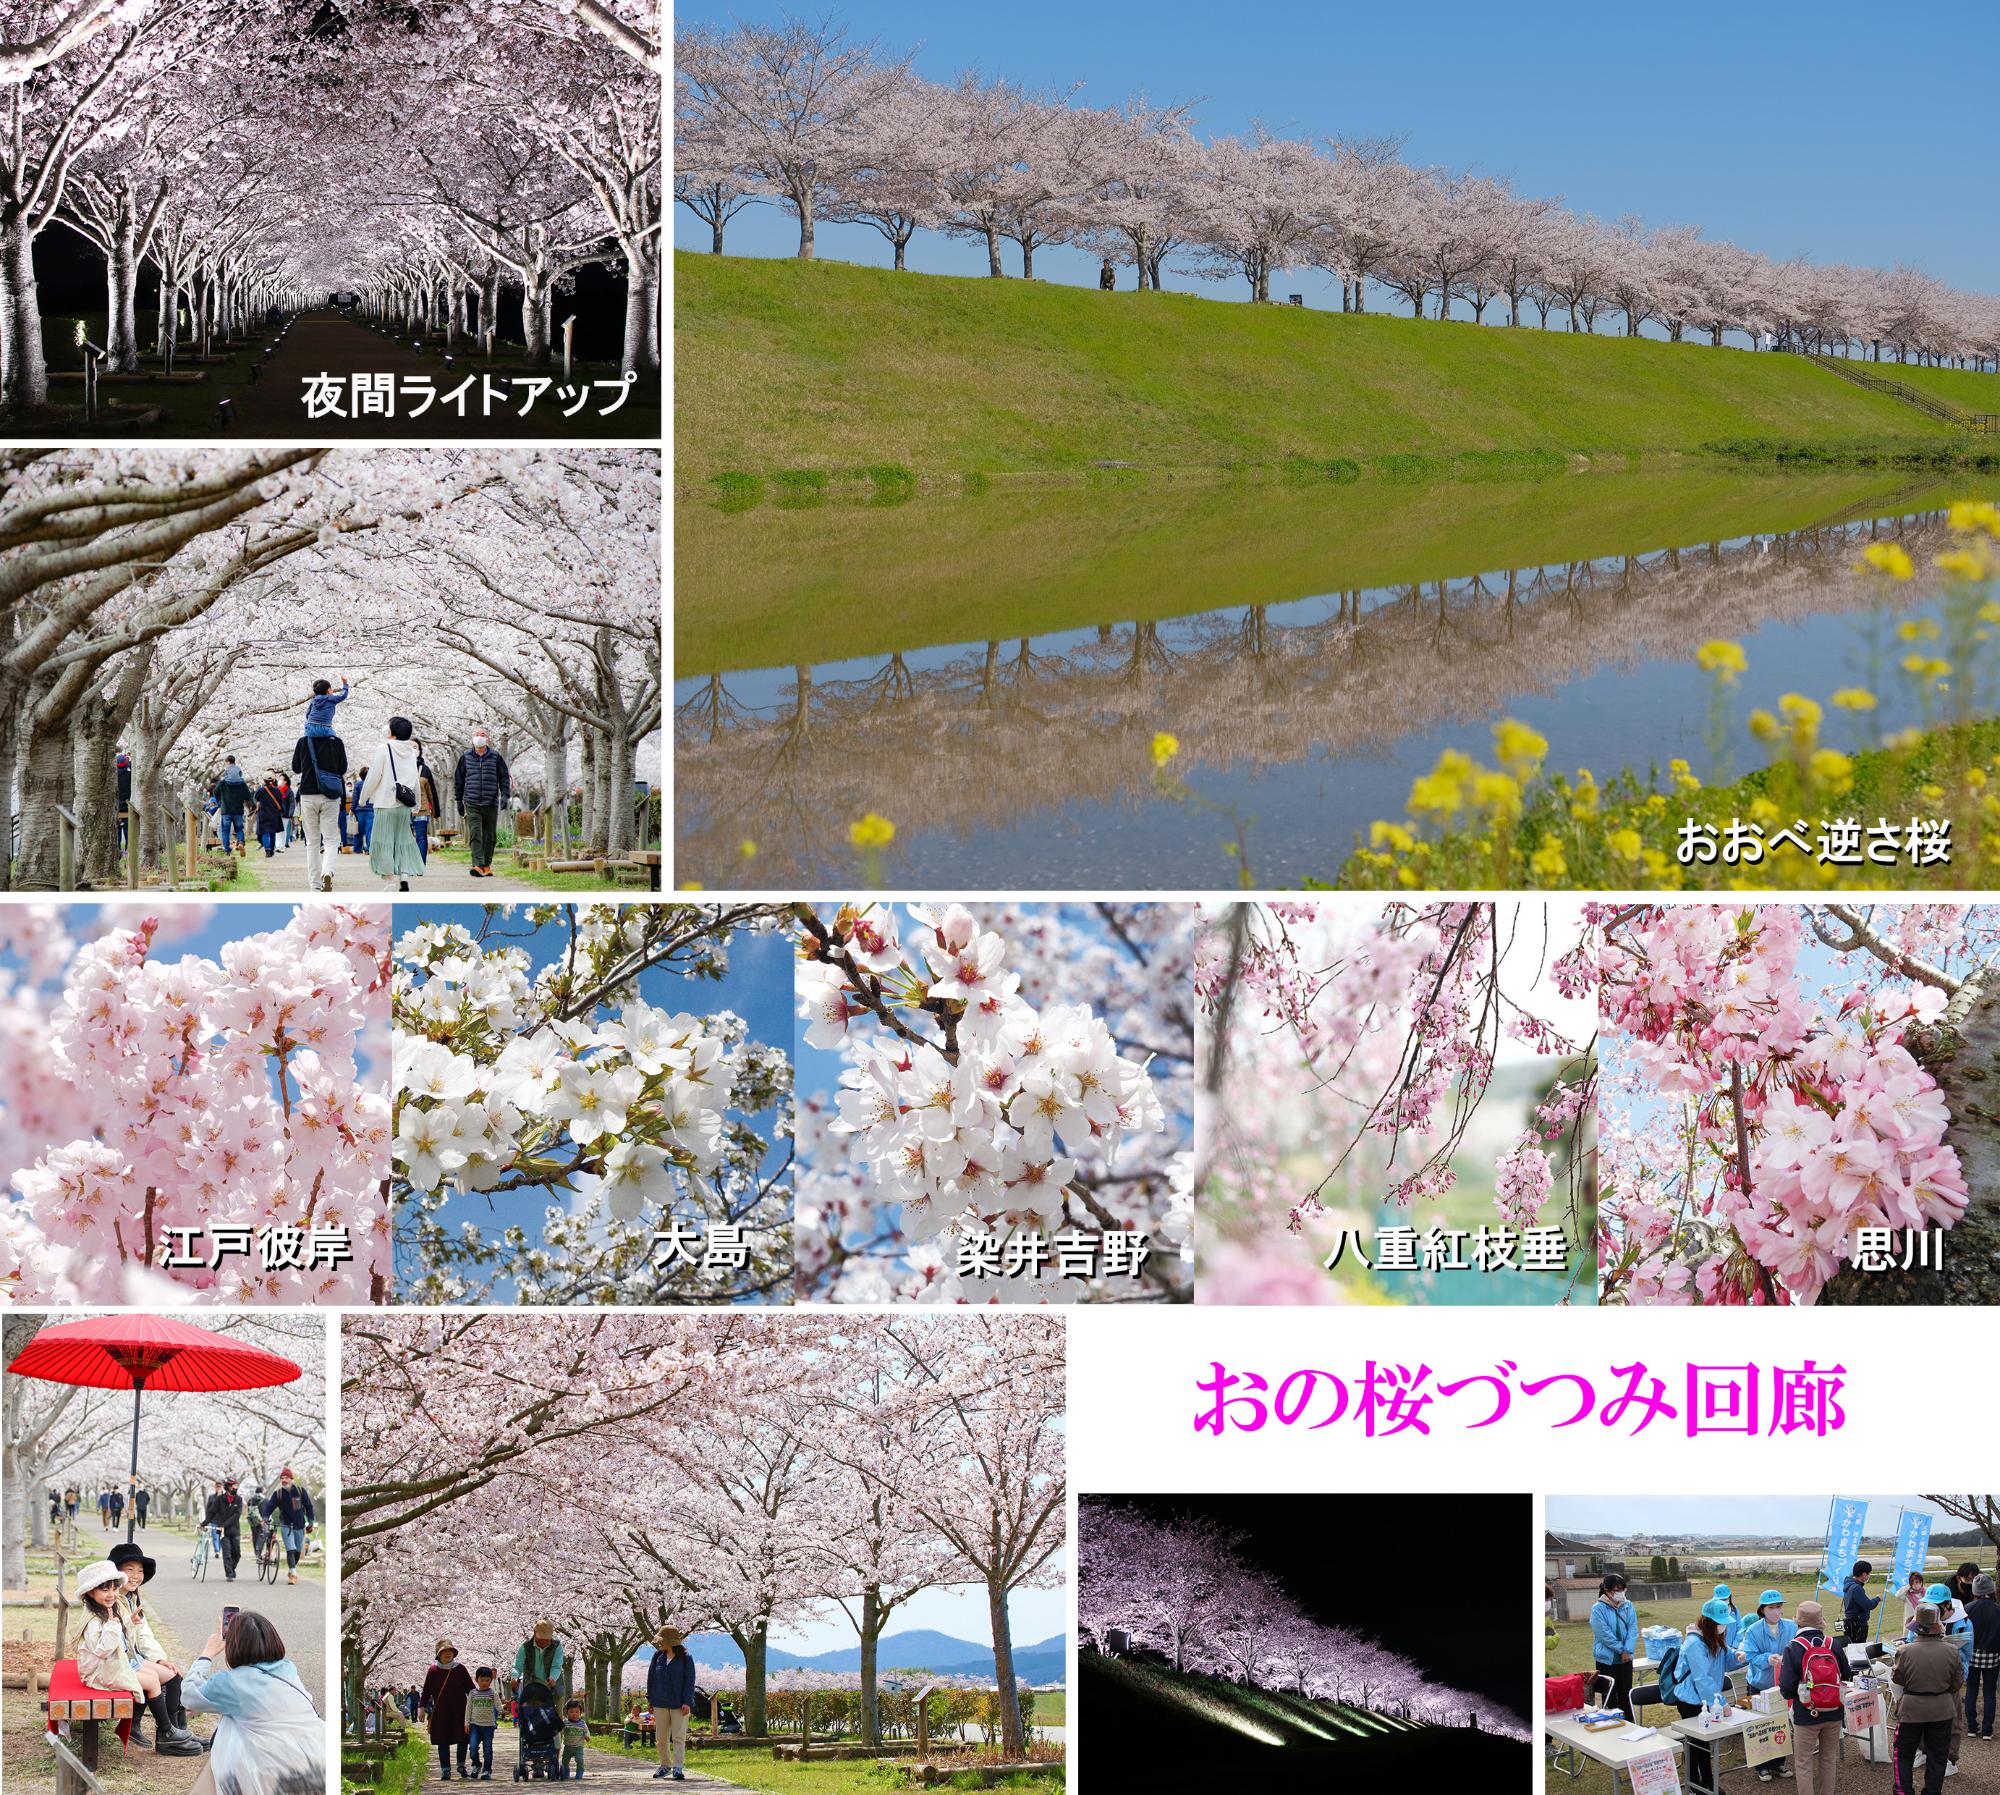 おの桜づつみ回廊の逆さ桜や夜間ライトアップの風景を組み合わせた写真